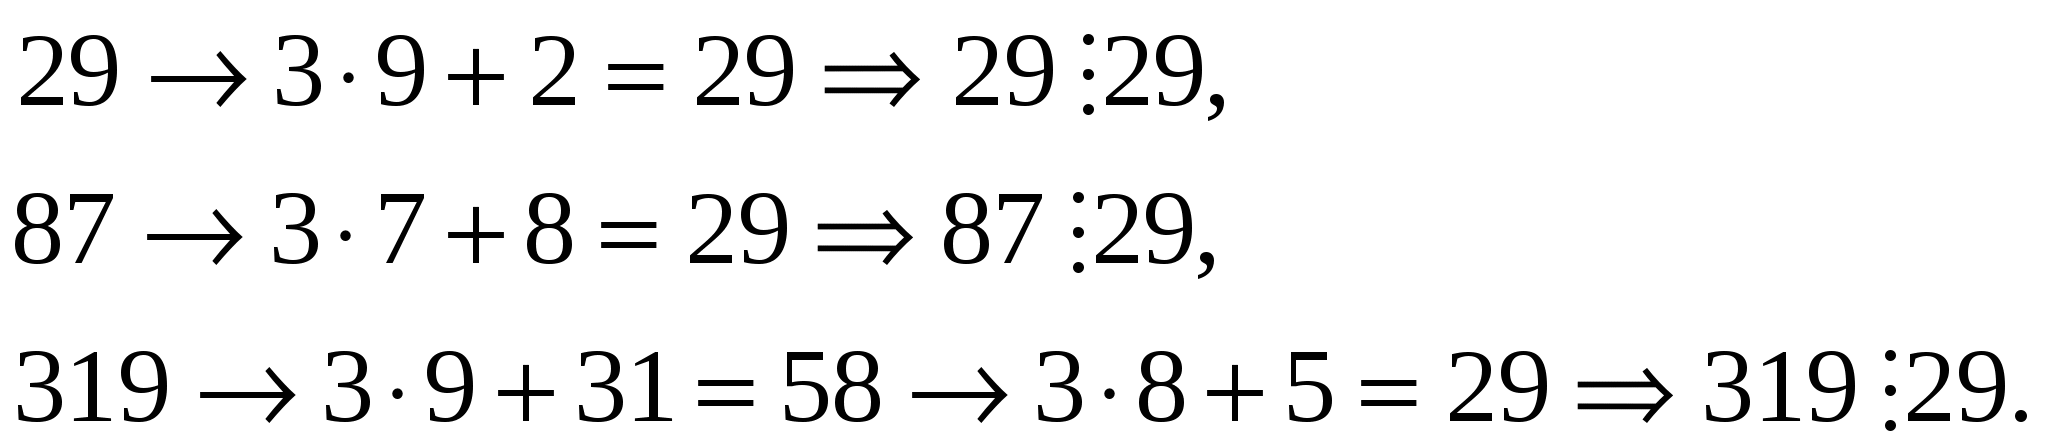 Факультатив по математике «Признаки делимости натуральных чисел»